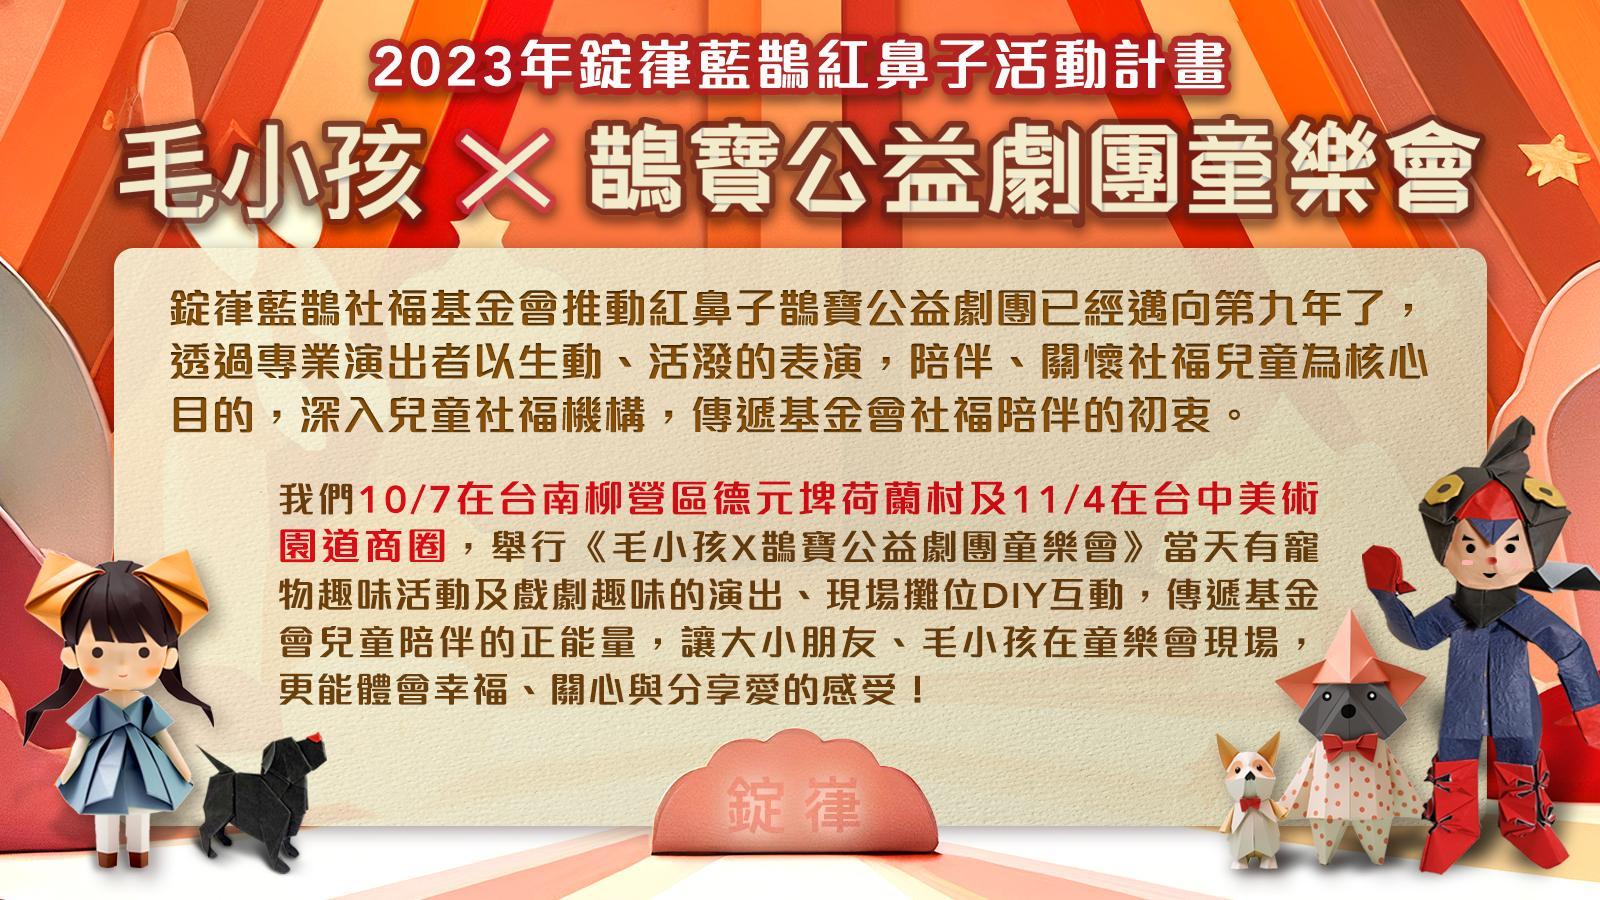 2023年錠嵂藍鵲紅鼻子鵲寶公益劇團童樂會演員及活動志工招募